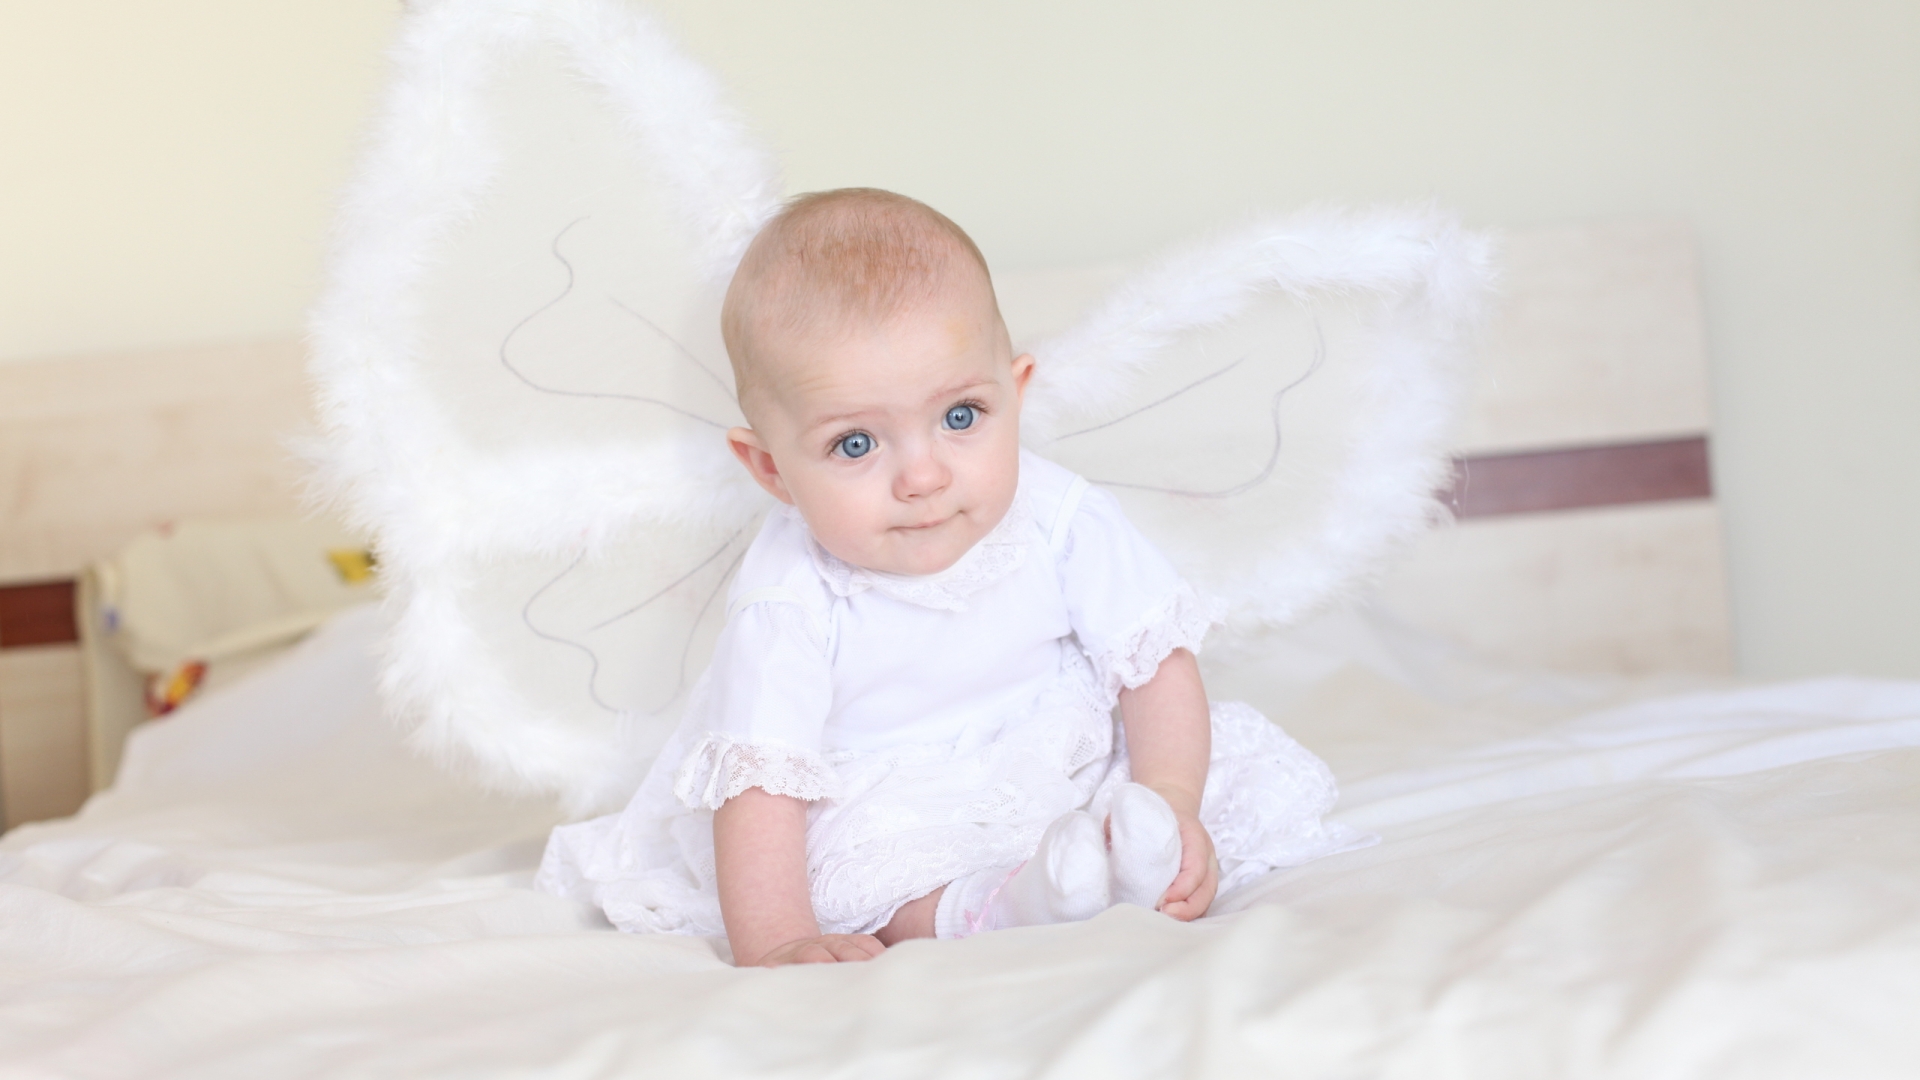 Little Angel for 1920 x 1080 HDTV 1080p resolution